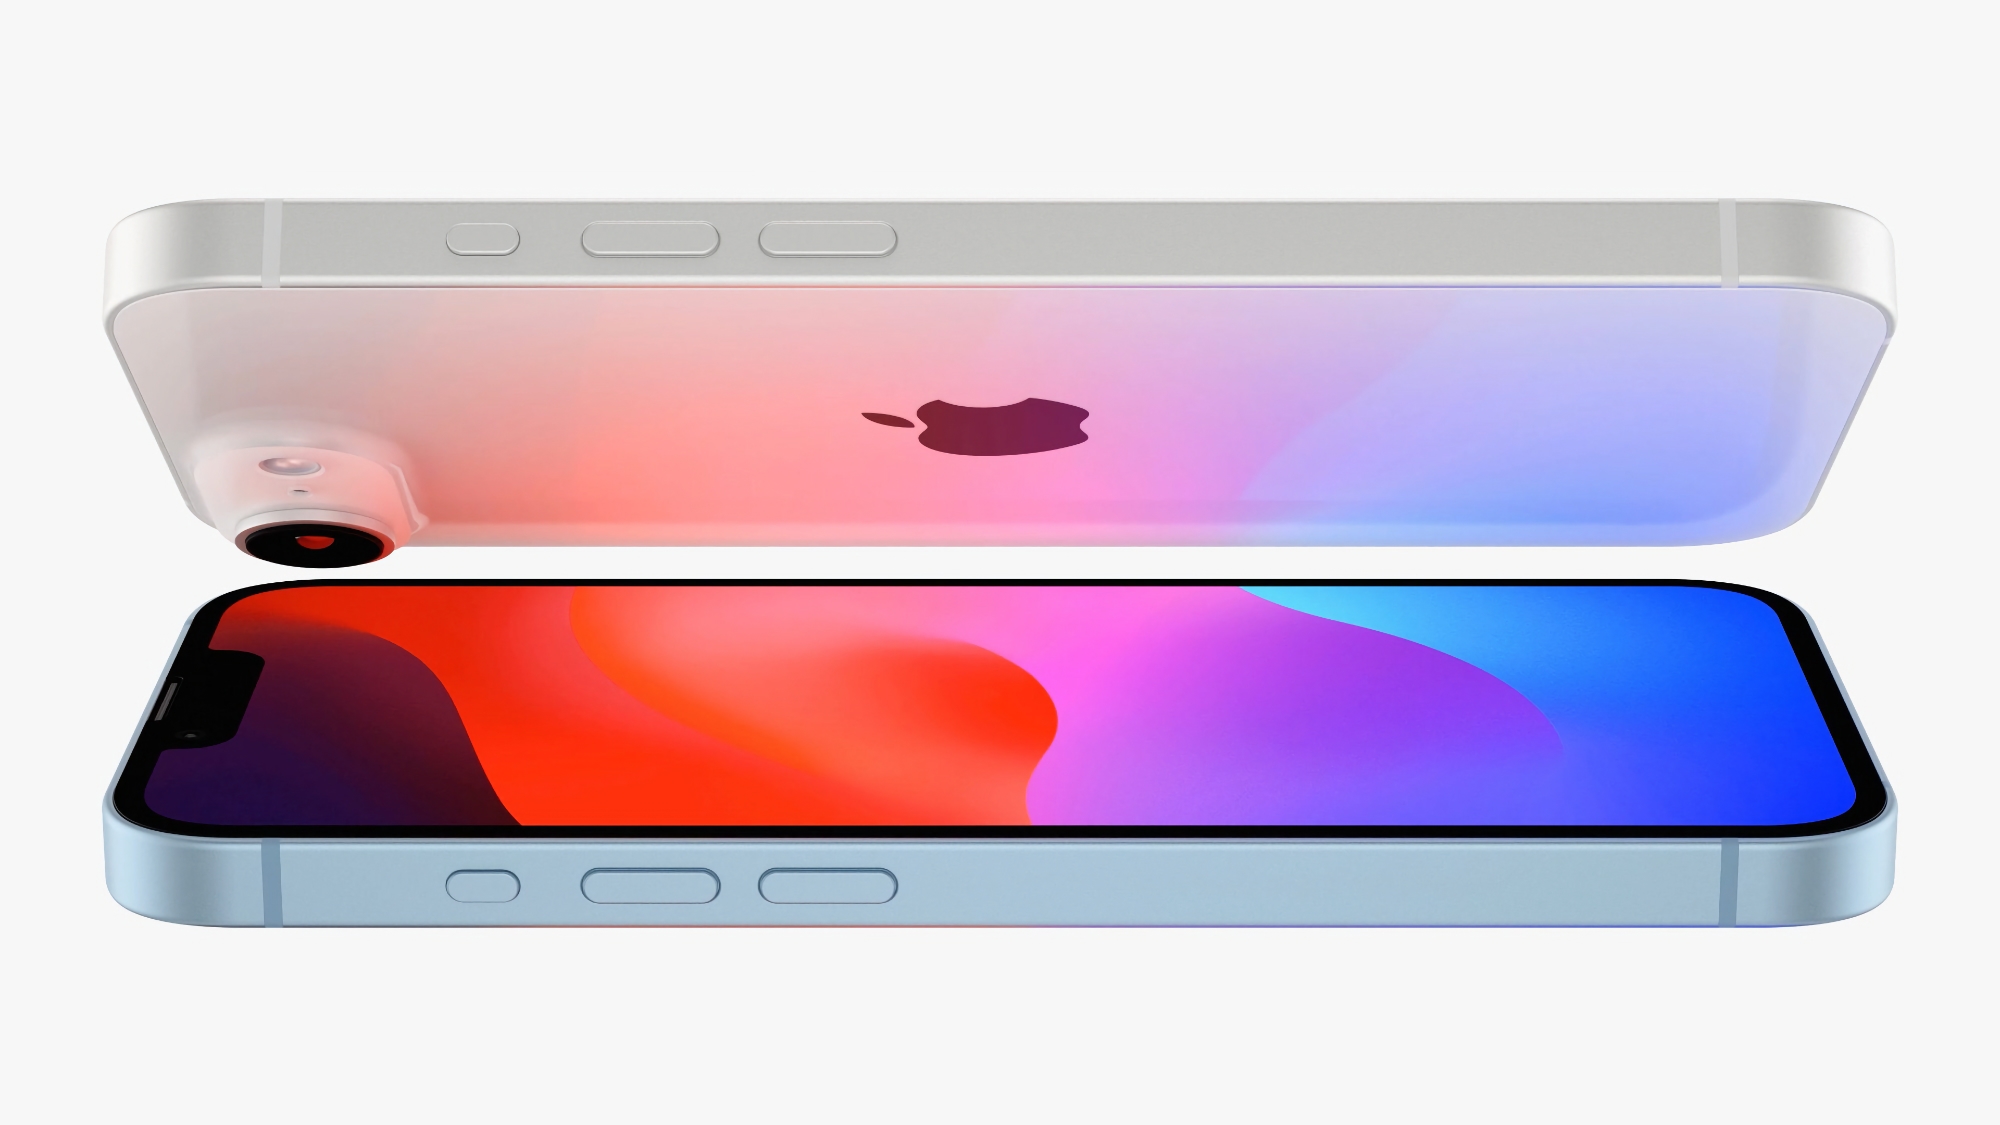 Слух: iPhone SE 4 получит 6.1-дюймовый OLED дисплей производства китайской компании BOE